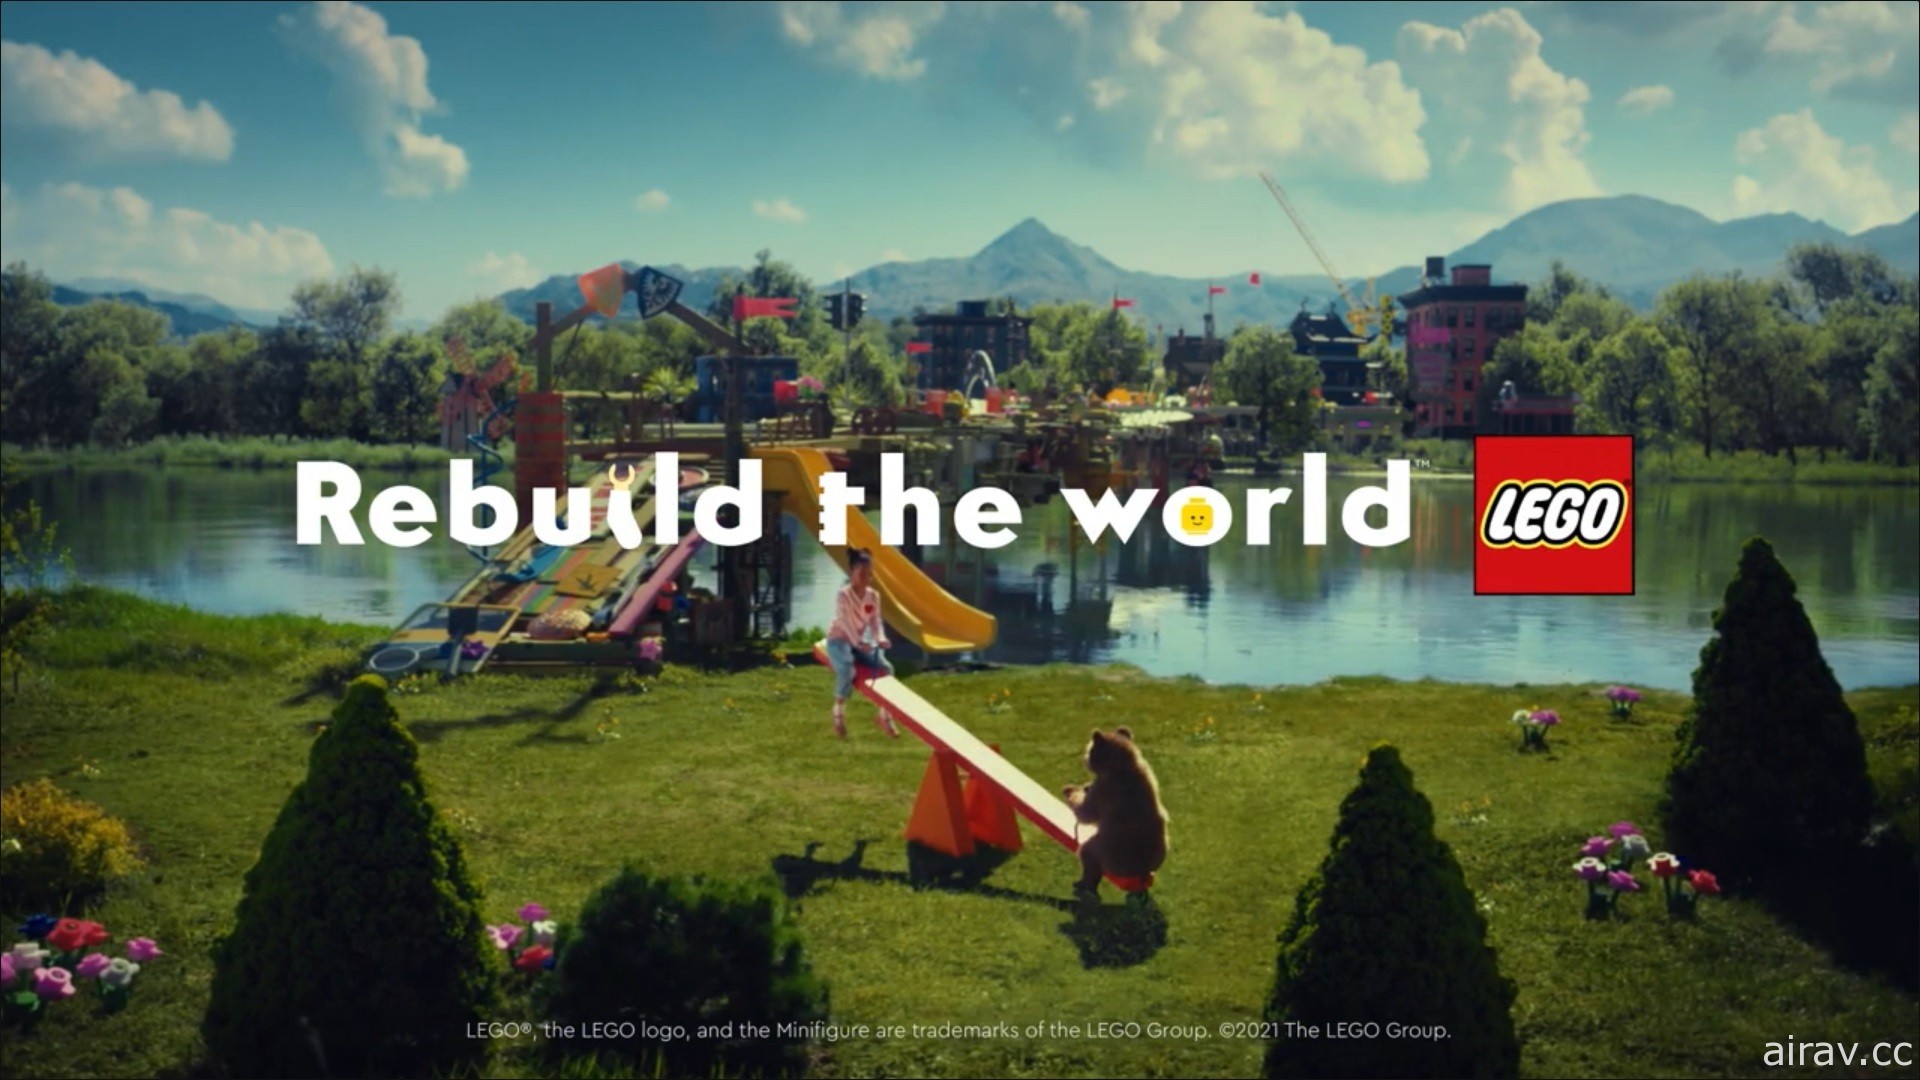 响应乐高全球品牌理念“Rebuild the World”创意征件活动即日起在台开跑